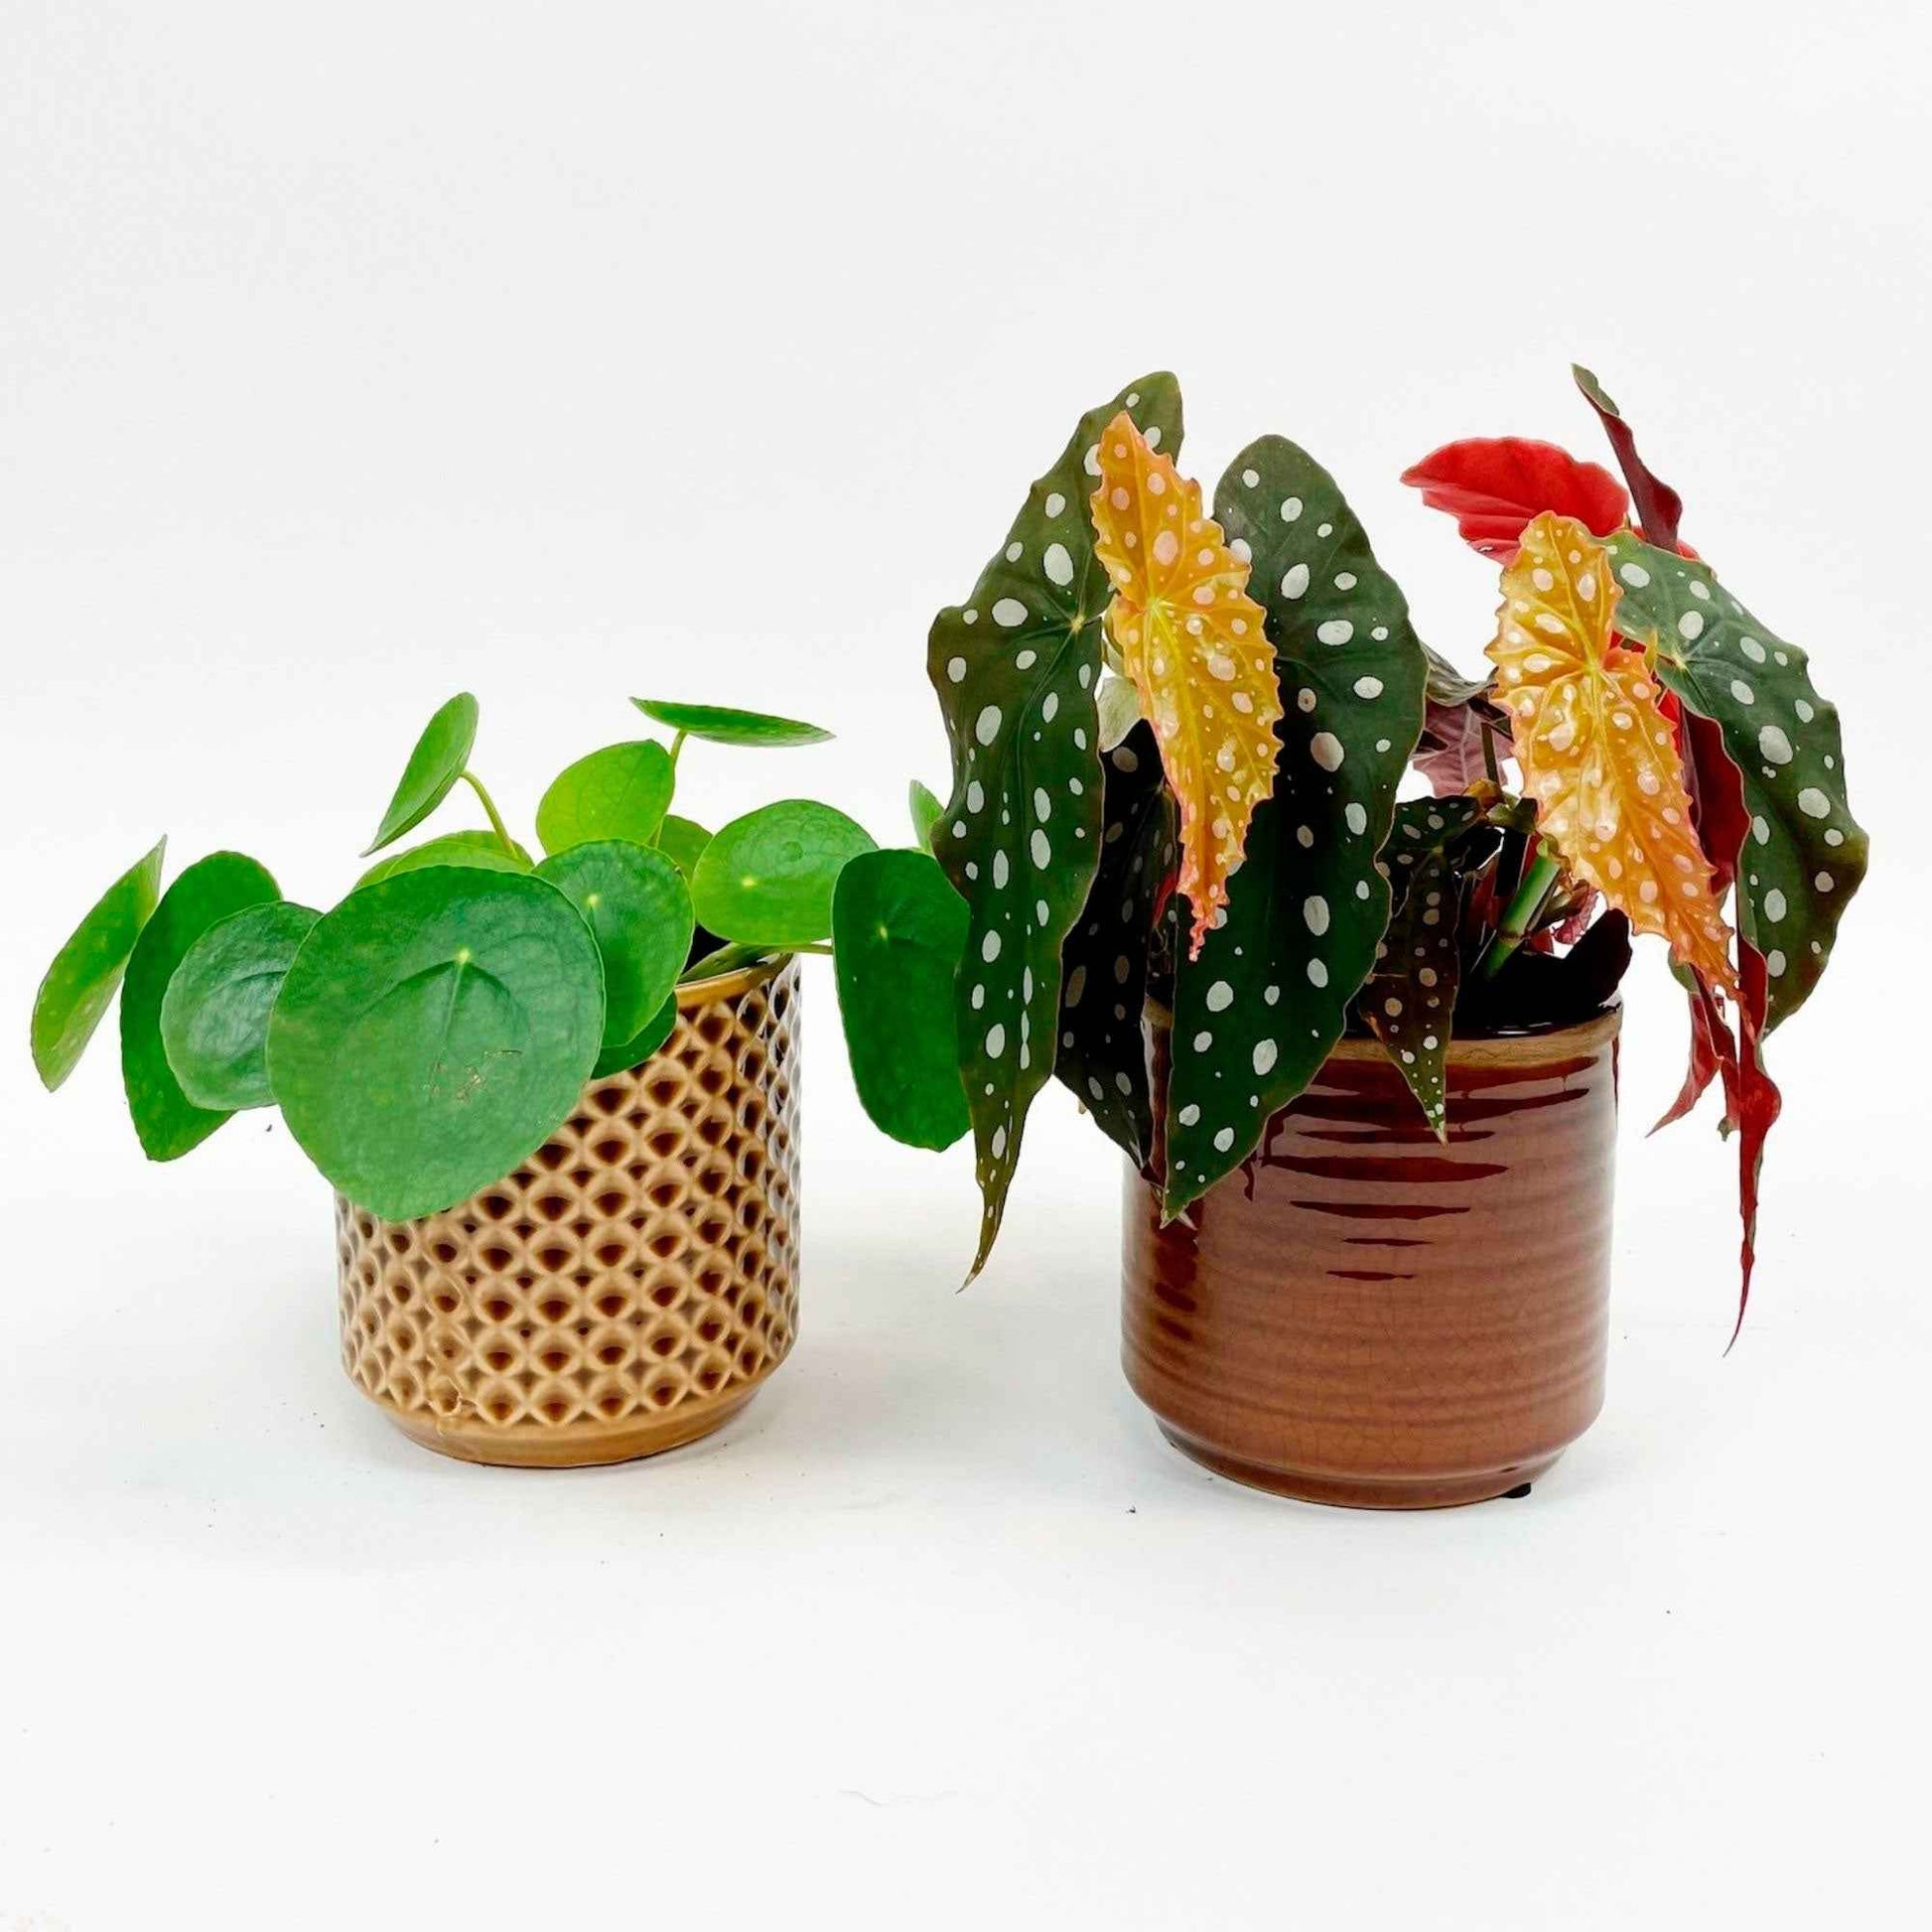 1x Bégonia Maculata + 1x Plante à monnaie chinoise avec cache-pots - Plantes d'intérieur